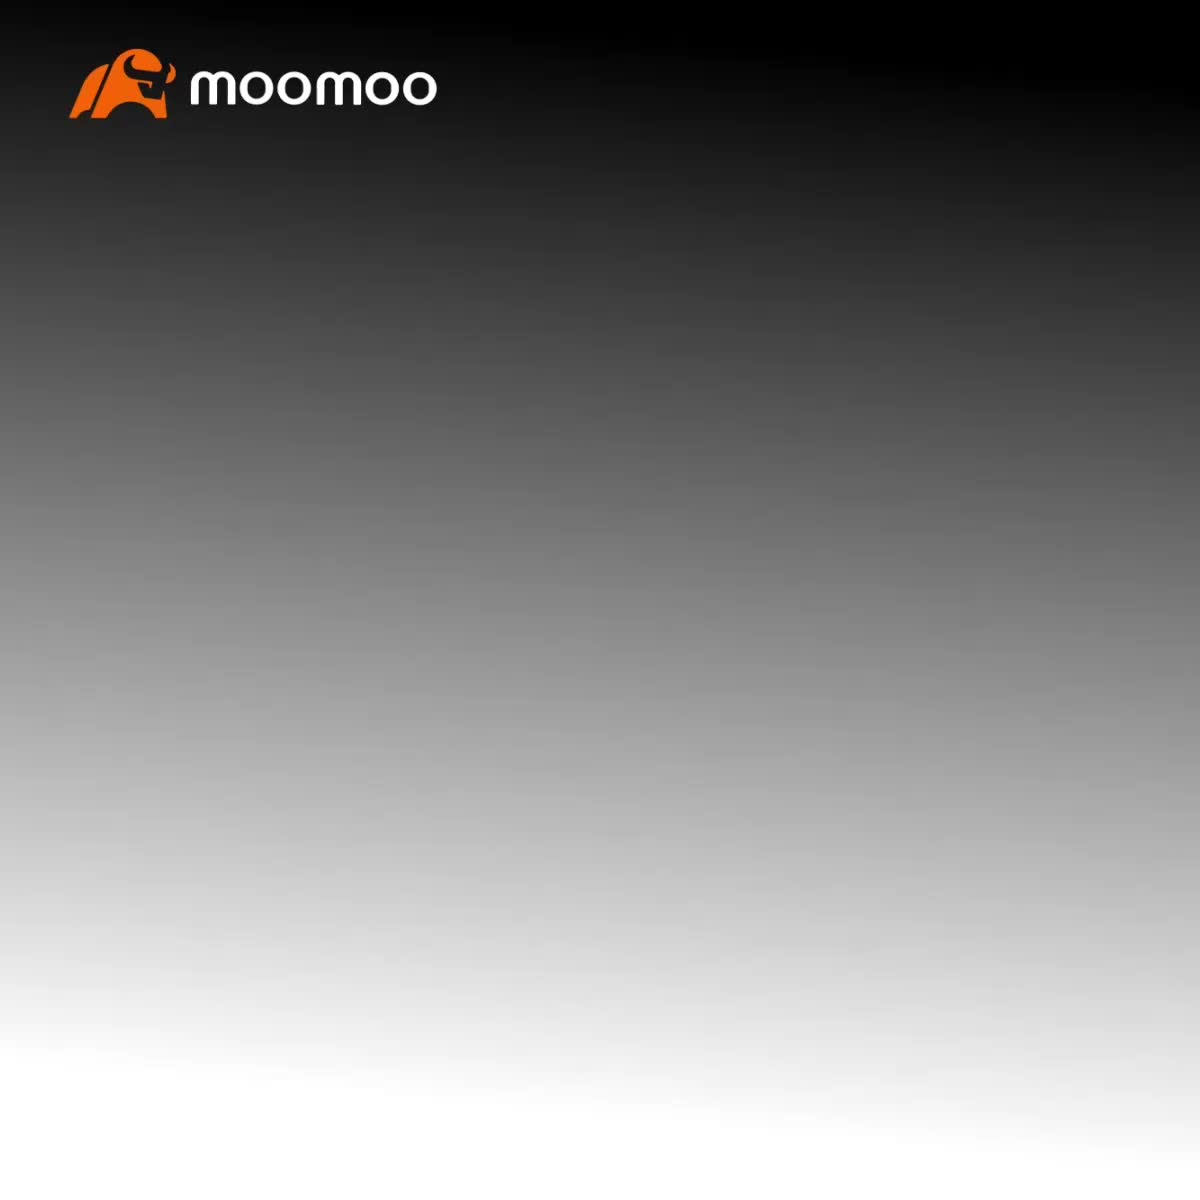 Moomoo NXリリース：フィーチャー・エクスペリエンス・オフィサーとして参加して、50ドルのキャッシュリワードを獲得できるかもしれません！